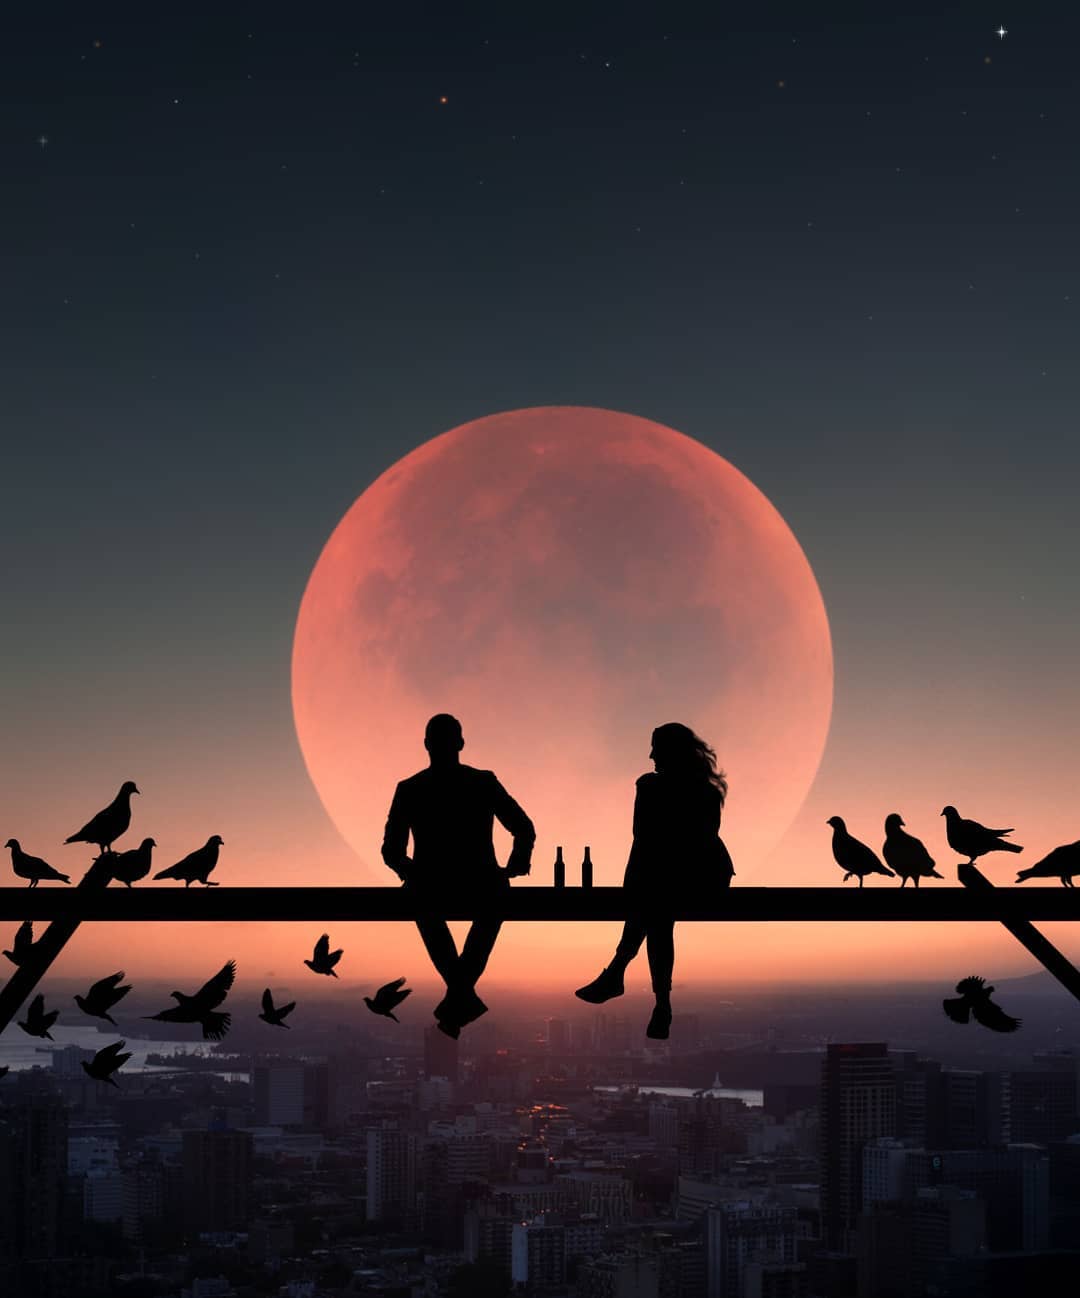 Фото Парень с девушка и птицы на фоне полной луны над городом, автор abdullah evindar